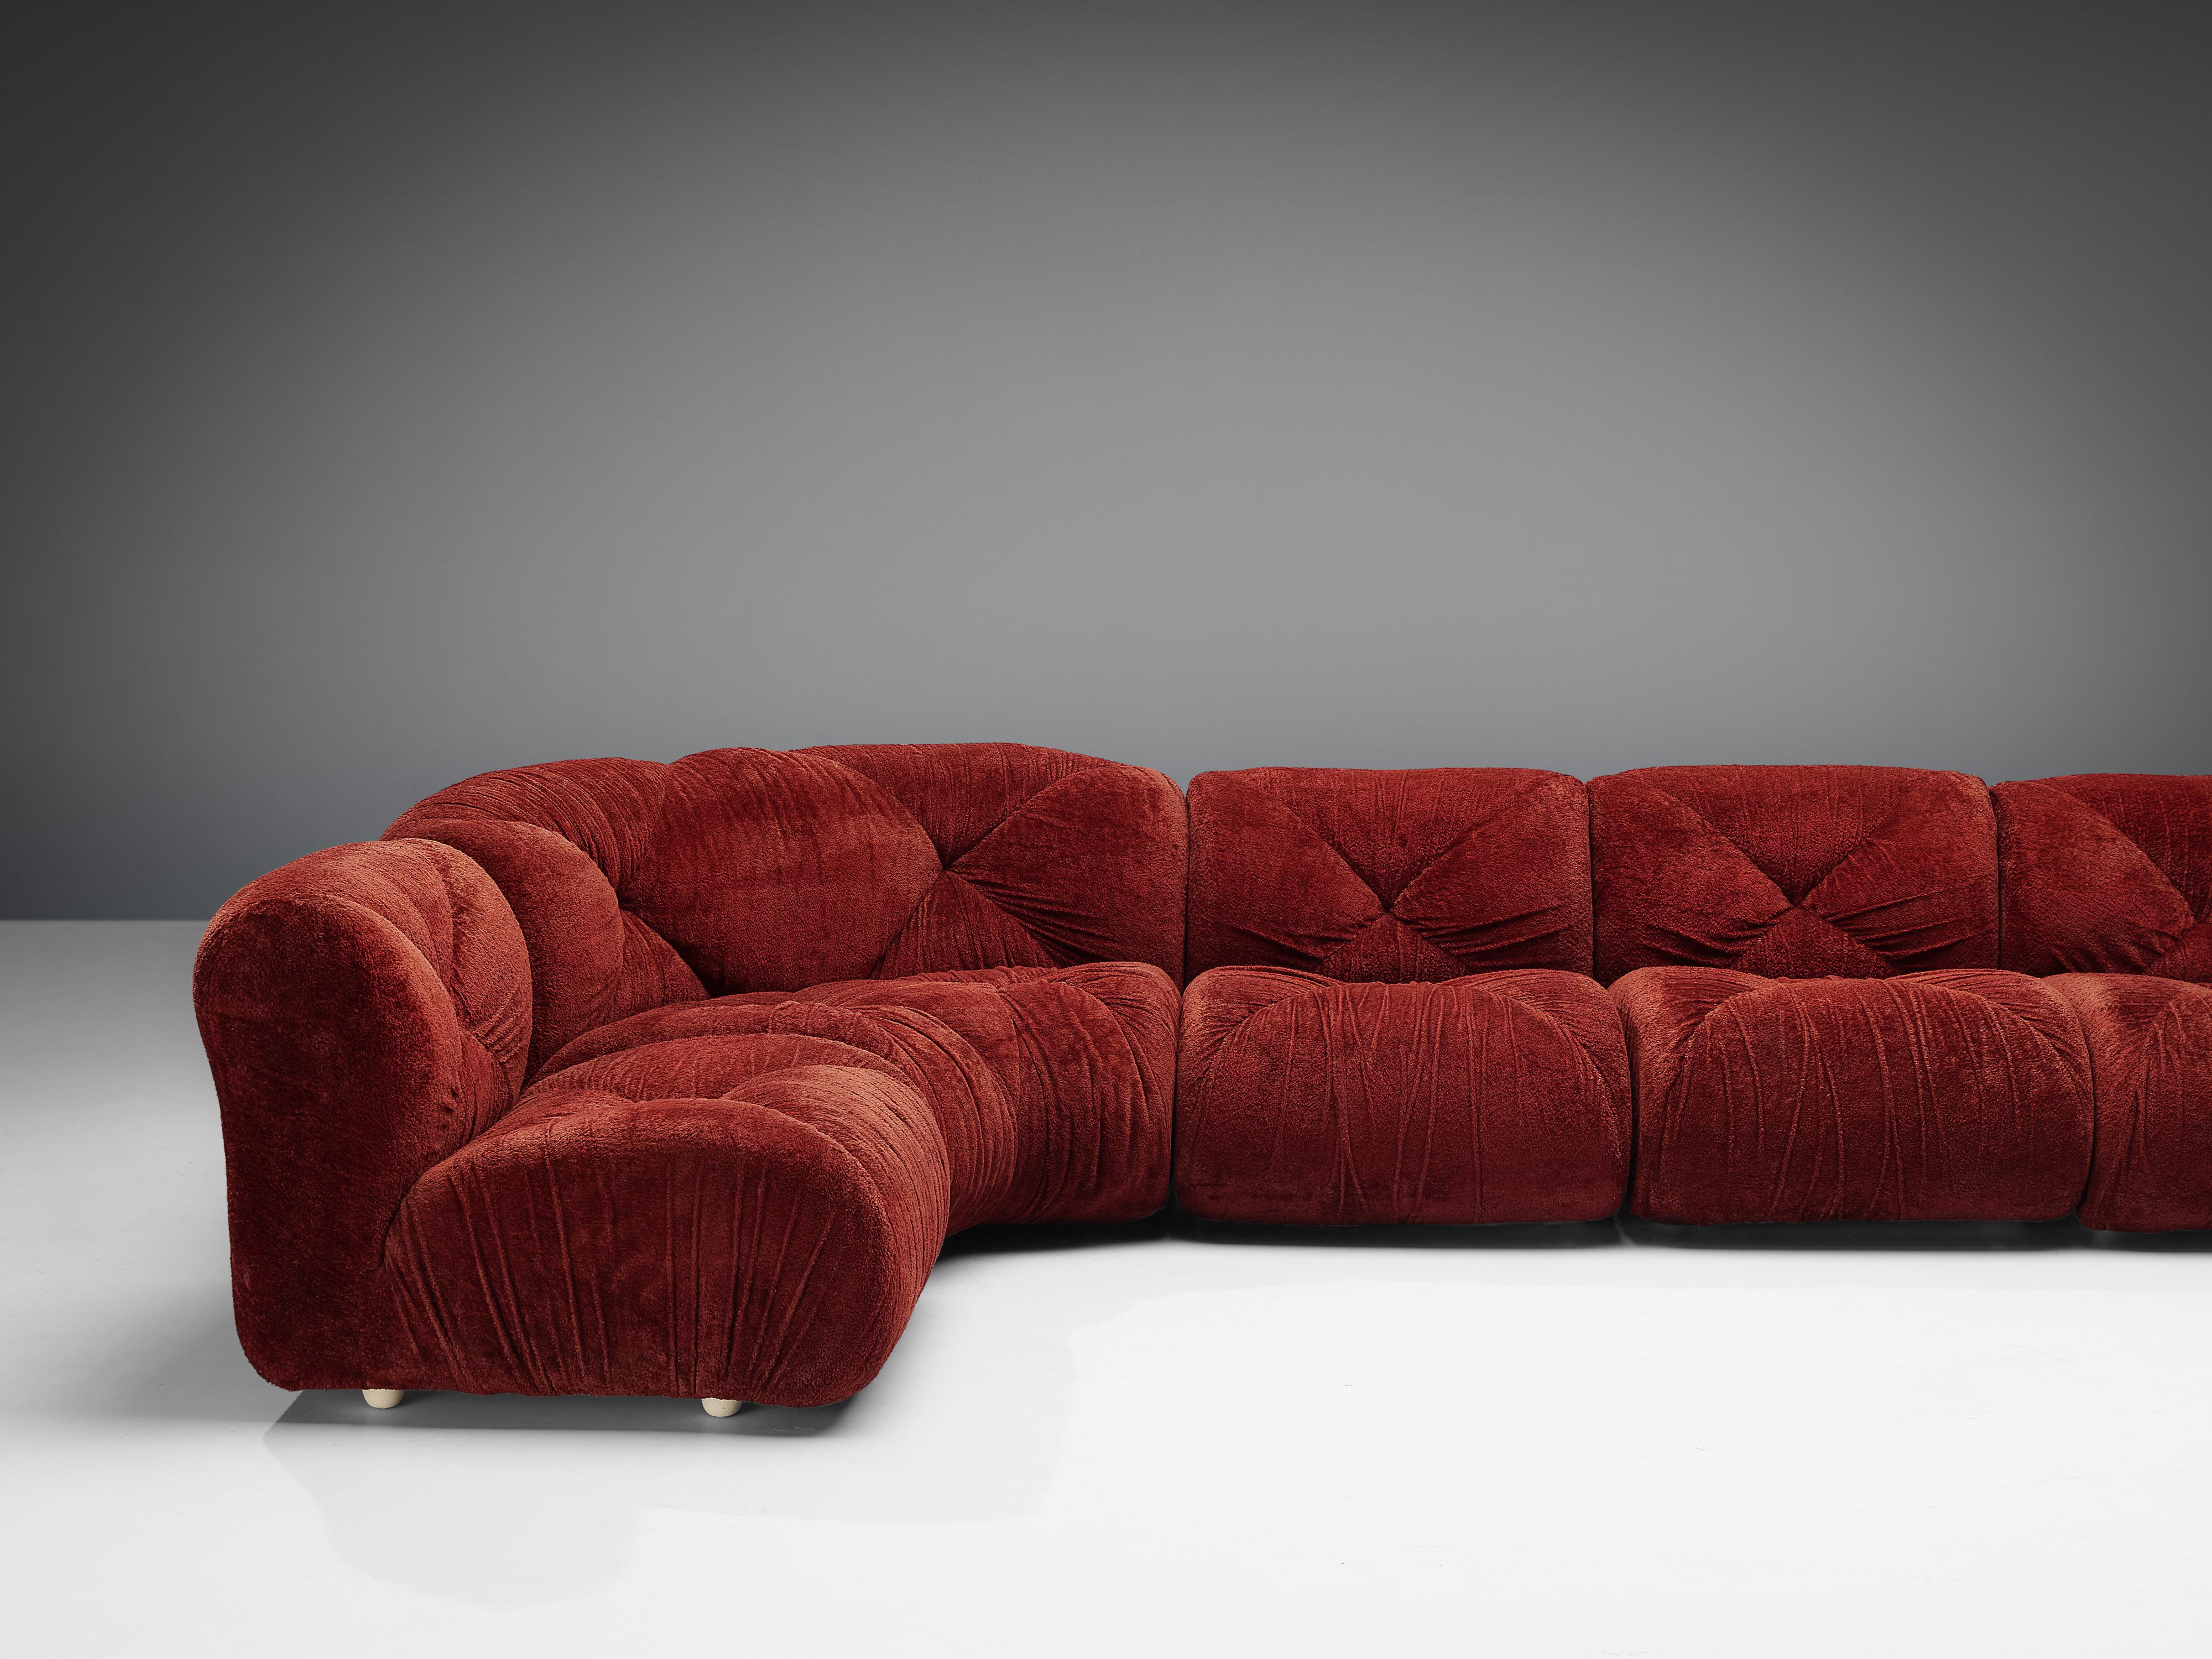 Chenille S. Nacci for Ceriotti 'Cuccagna' Italian Modular Sofa